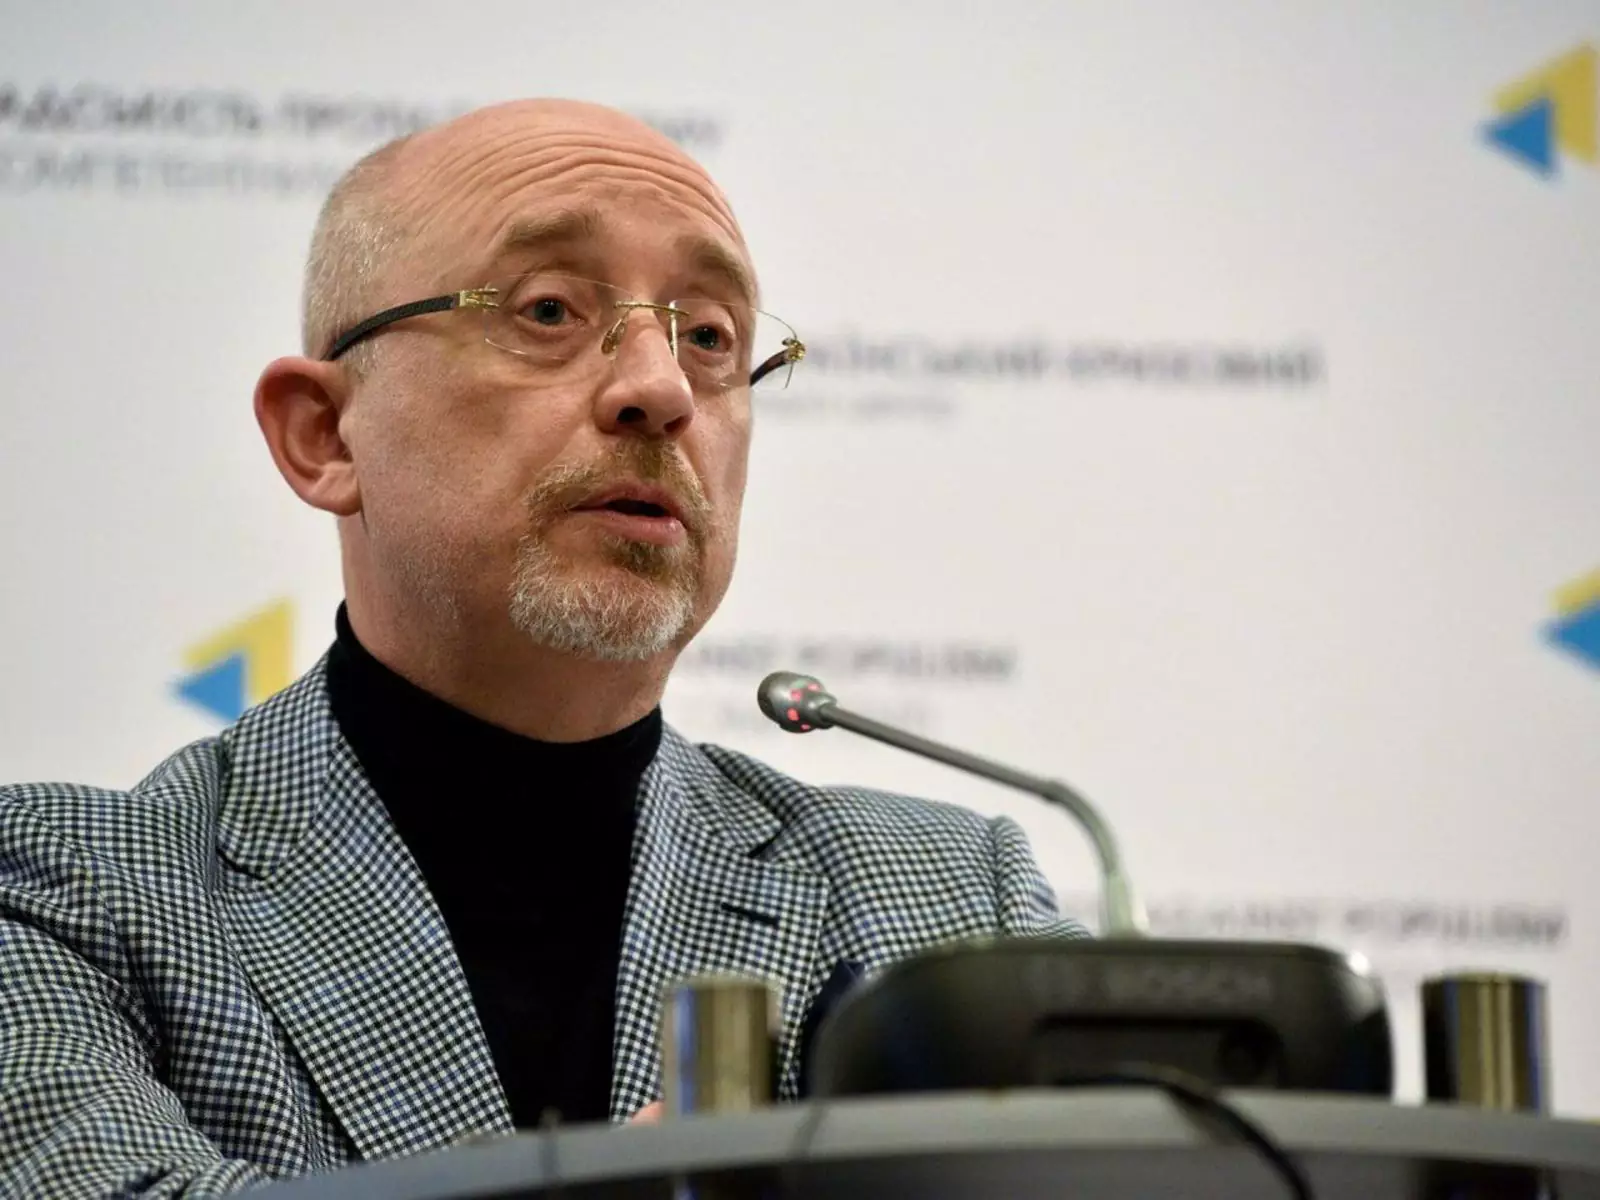 Министр обороны Украины Алексей Резников.